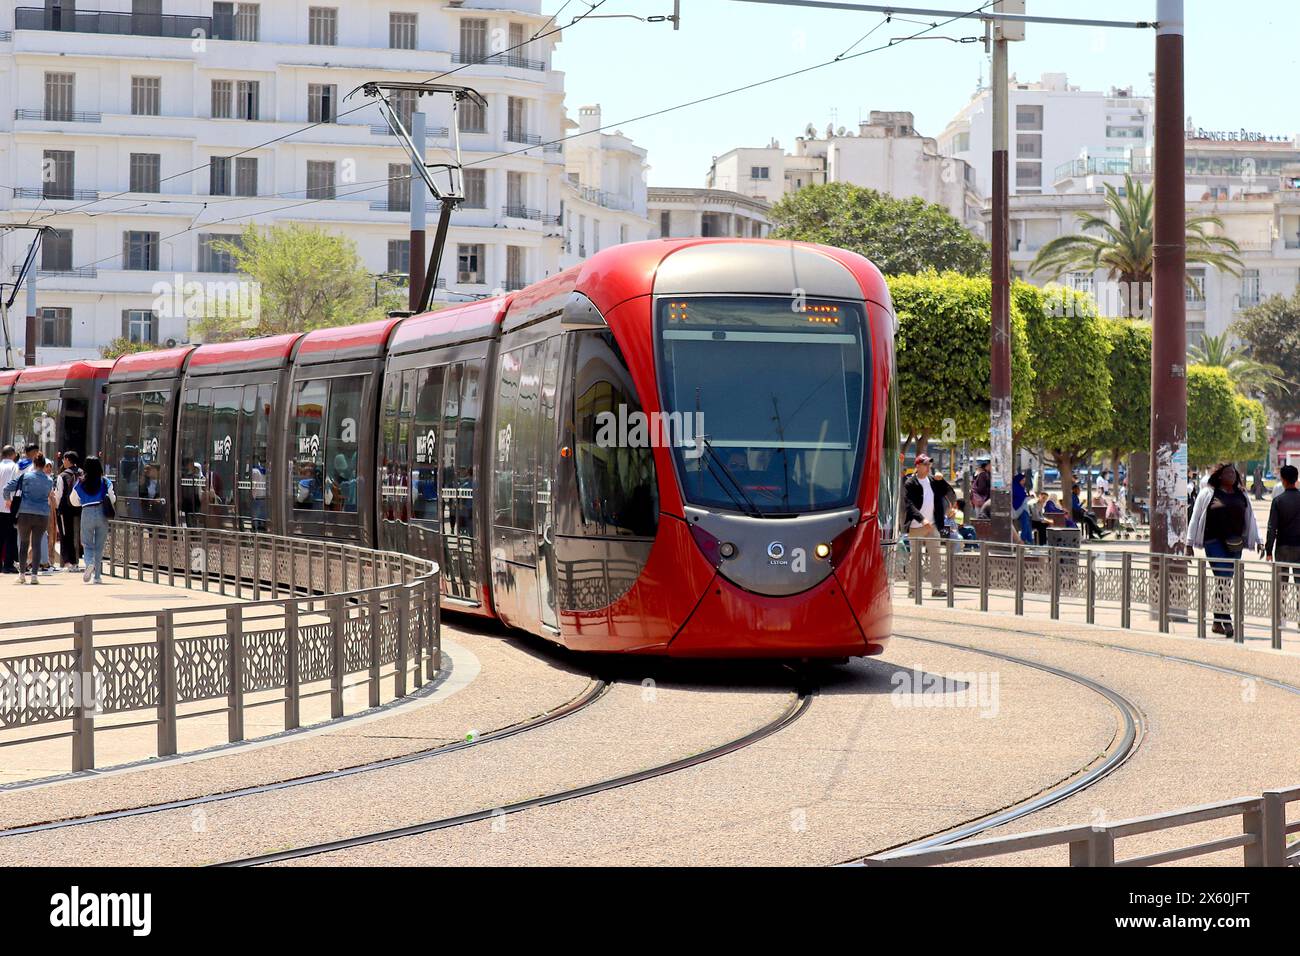 Casa Transports – eine marokkanische öffentliche Verkehrsbehörde hat mit Alstom einen Vertrag über 130 Mio. € für den Bau und die Lieferung von 66 Straßenbahnen des Typs Citadis X05 unterzeichnet. Stockfoto